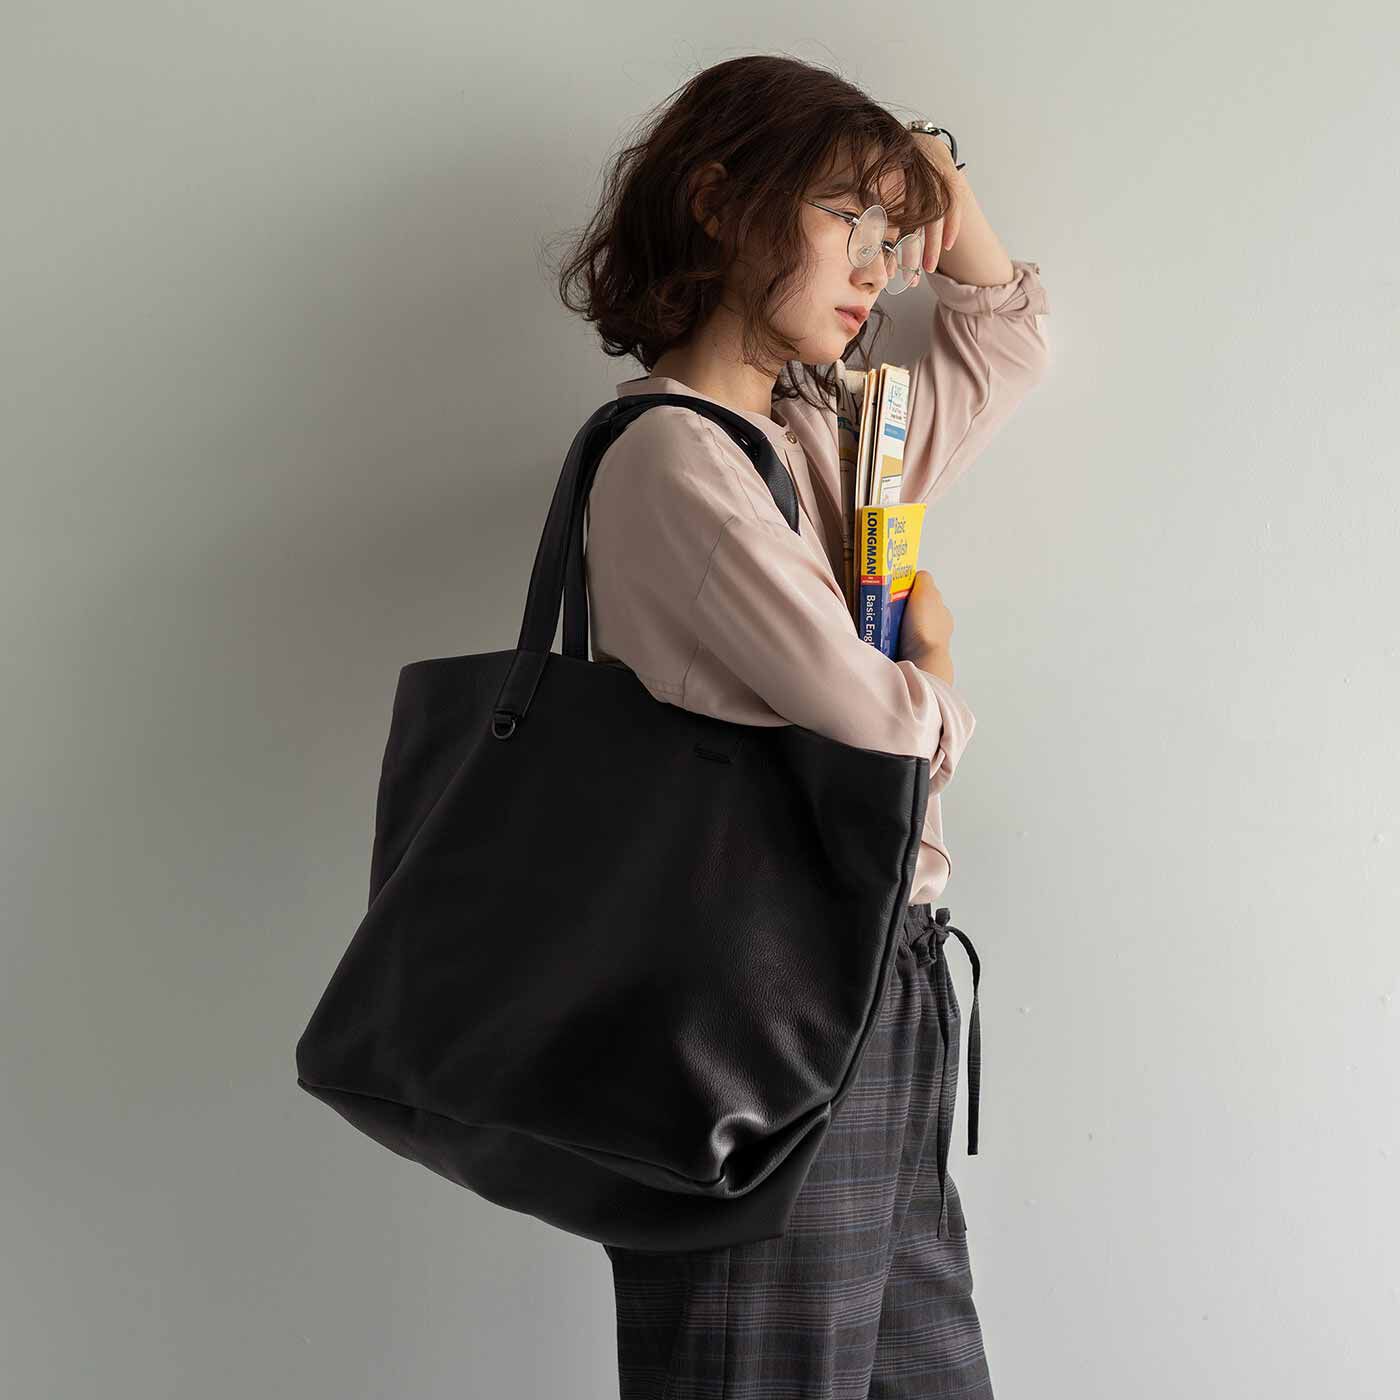 ＆Stories|福岡の鞄作家が作った 職人本革のホエールトートバッグ〈ブラック〉|くたっとやわらかいビッグサイズのトートバッグ。その名もホエール（くじら）バッグ。